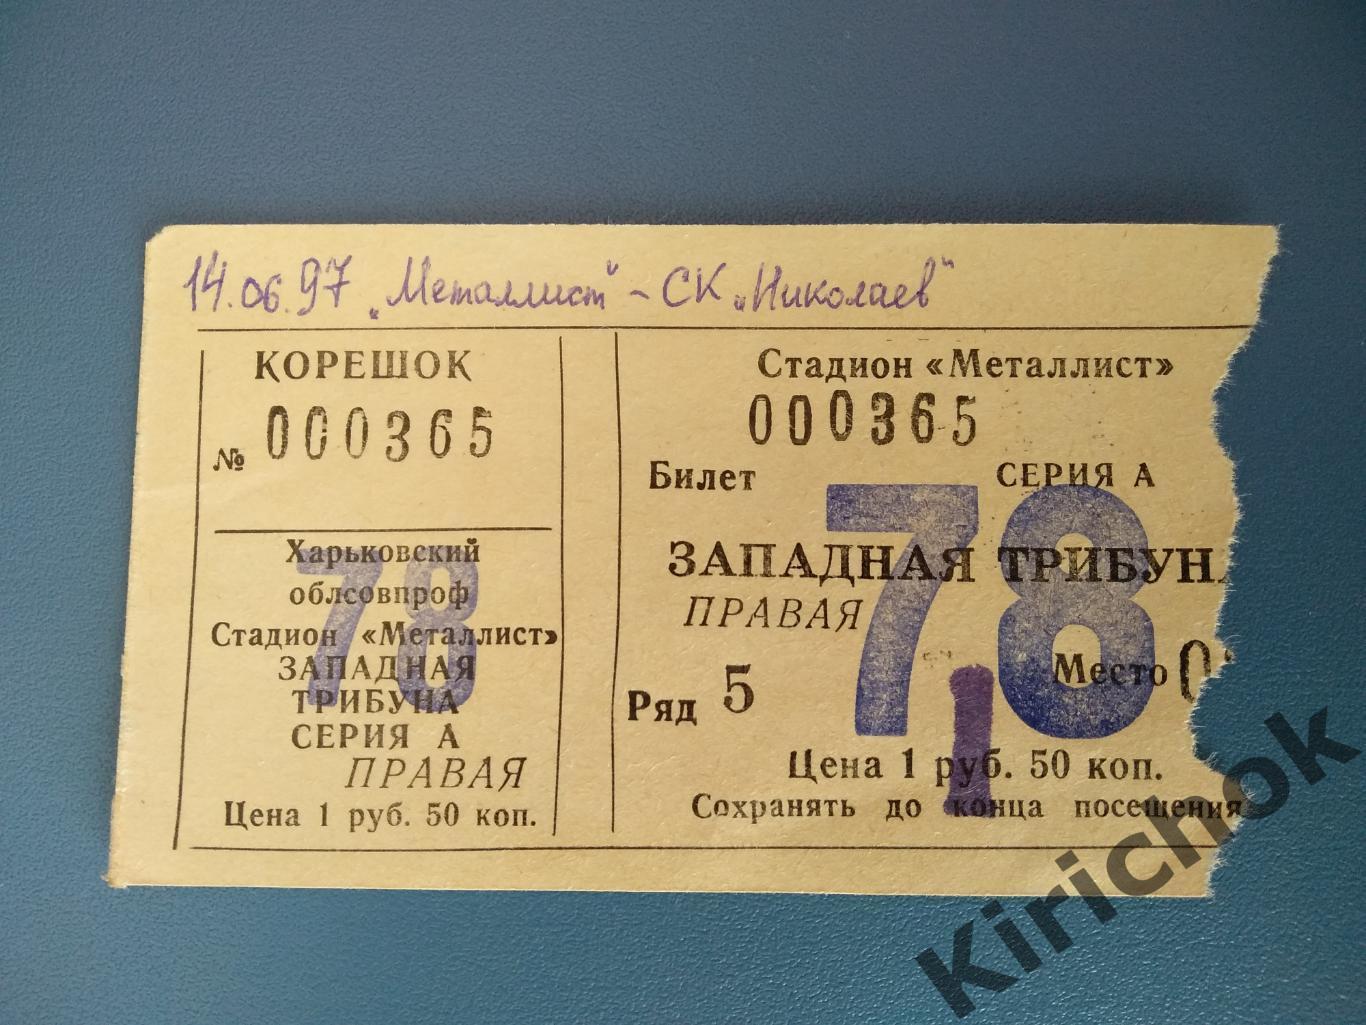 Металлист Харьков - СК Николаев Николаев 1996/1997